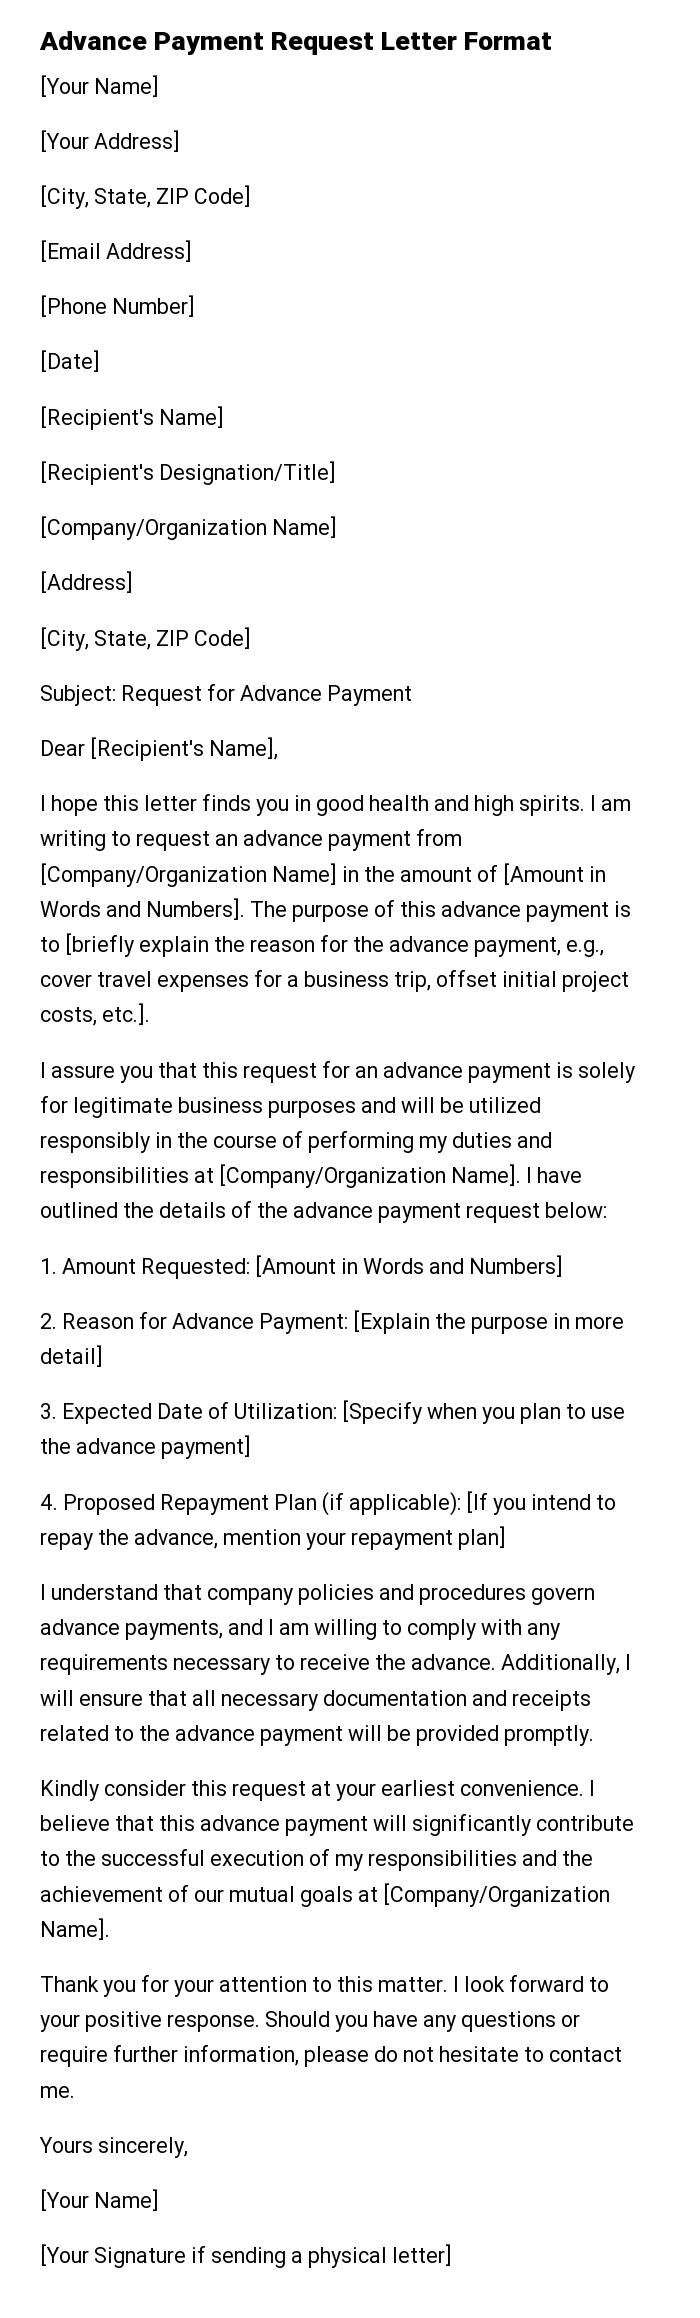 Advance Payment Request Letter Format